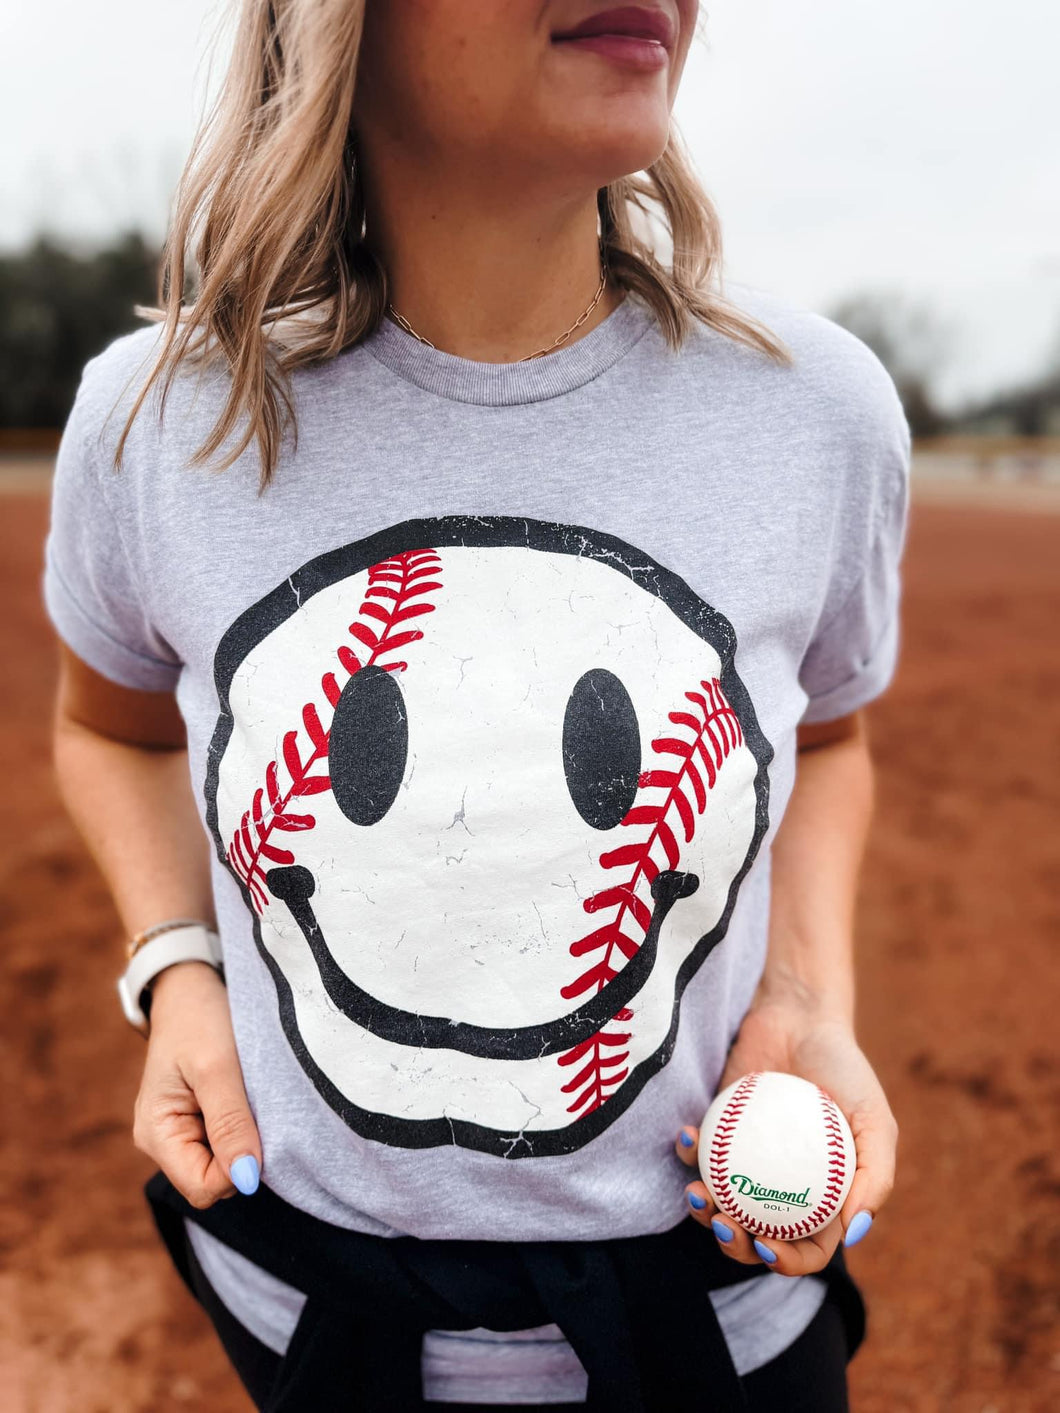 Softball/Baseball Smiley Graphic Tee